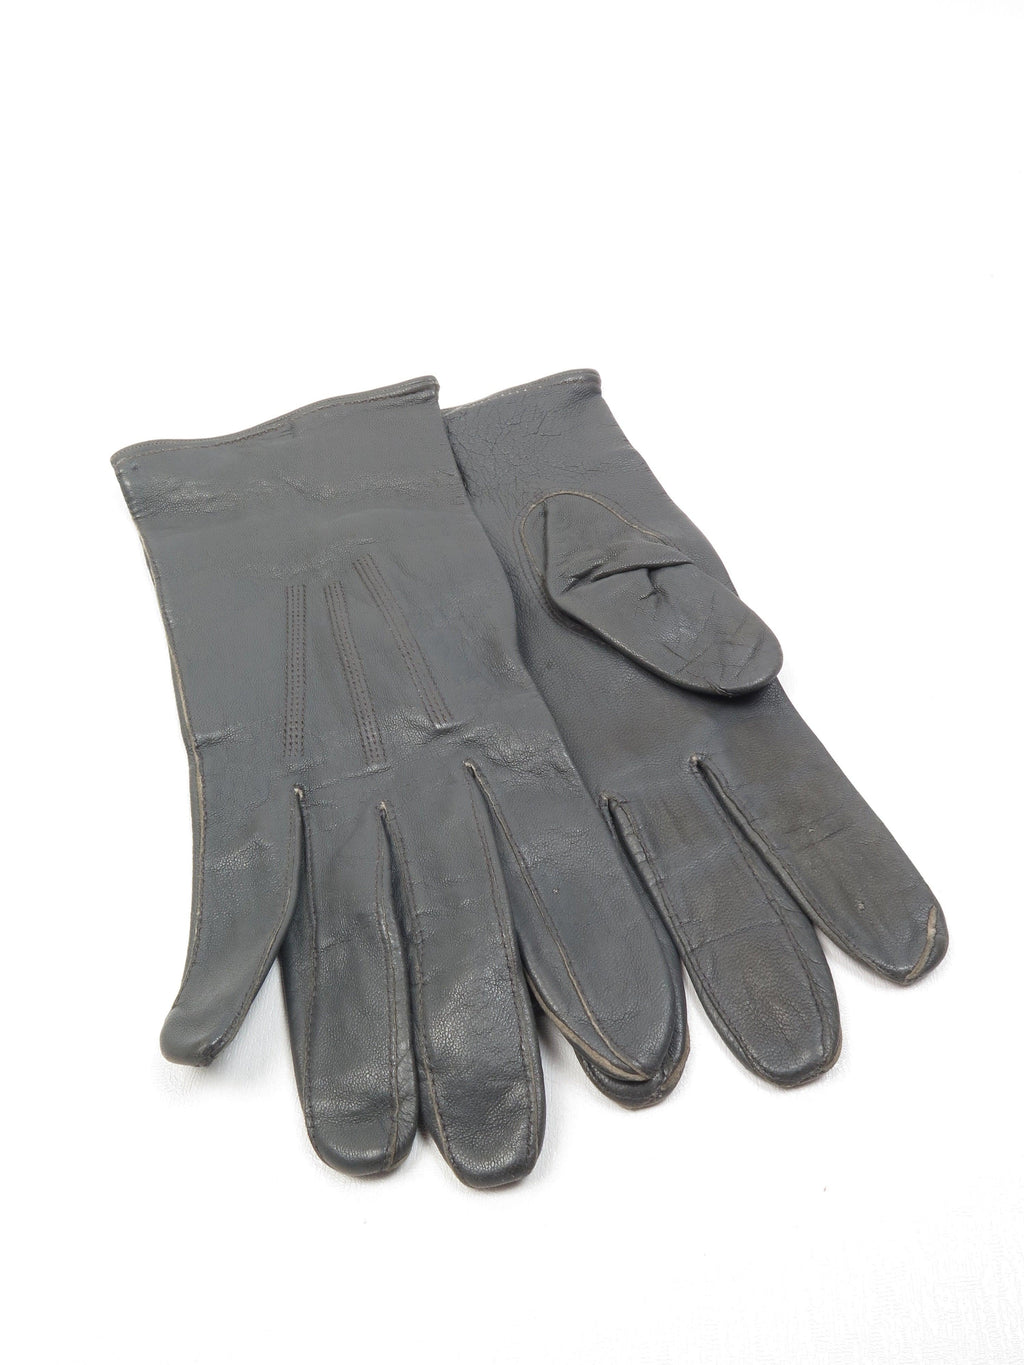 Men's Grey Vintage Leather Gloves *8.5* - The Harlequin